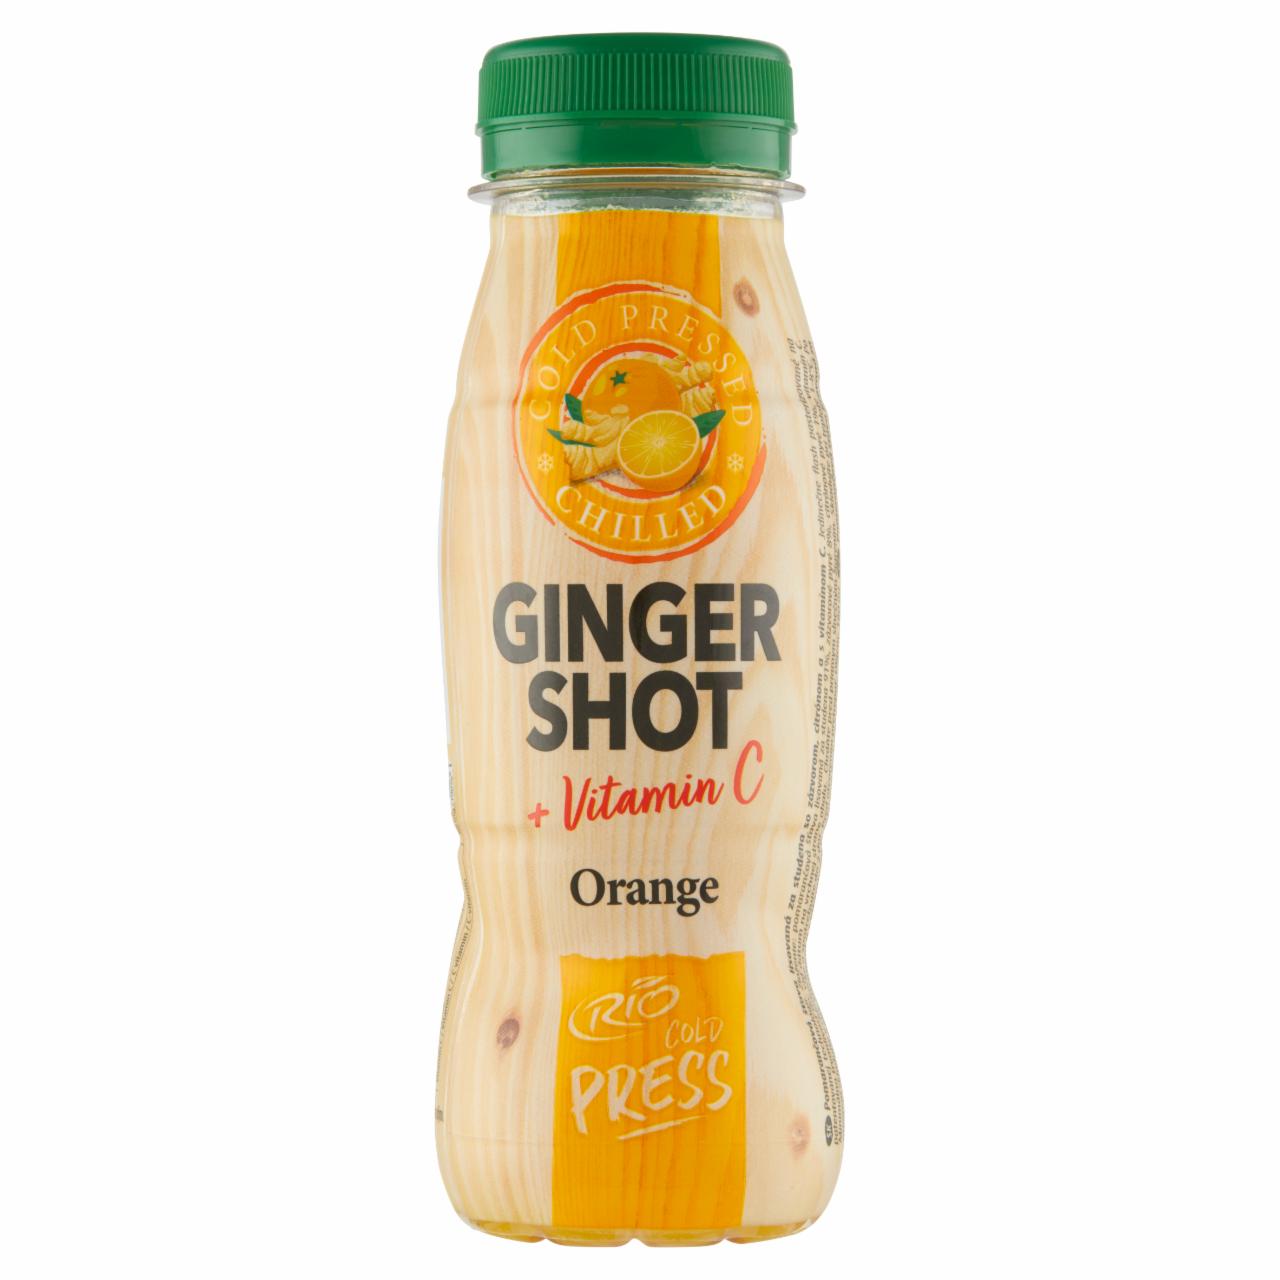 Fotografie - Ginger shot + Vitamin C Orange Rio fresh